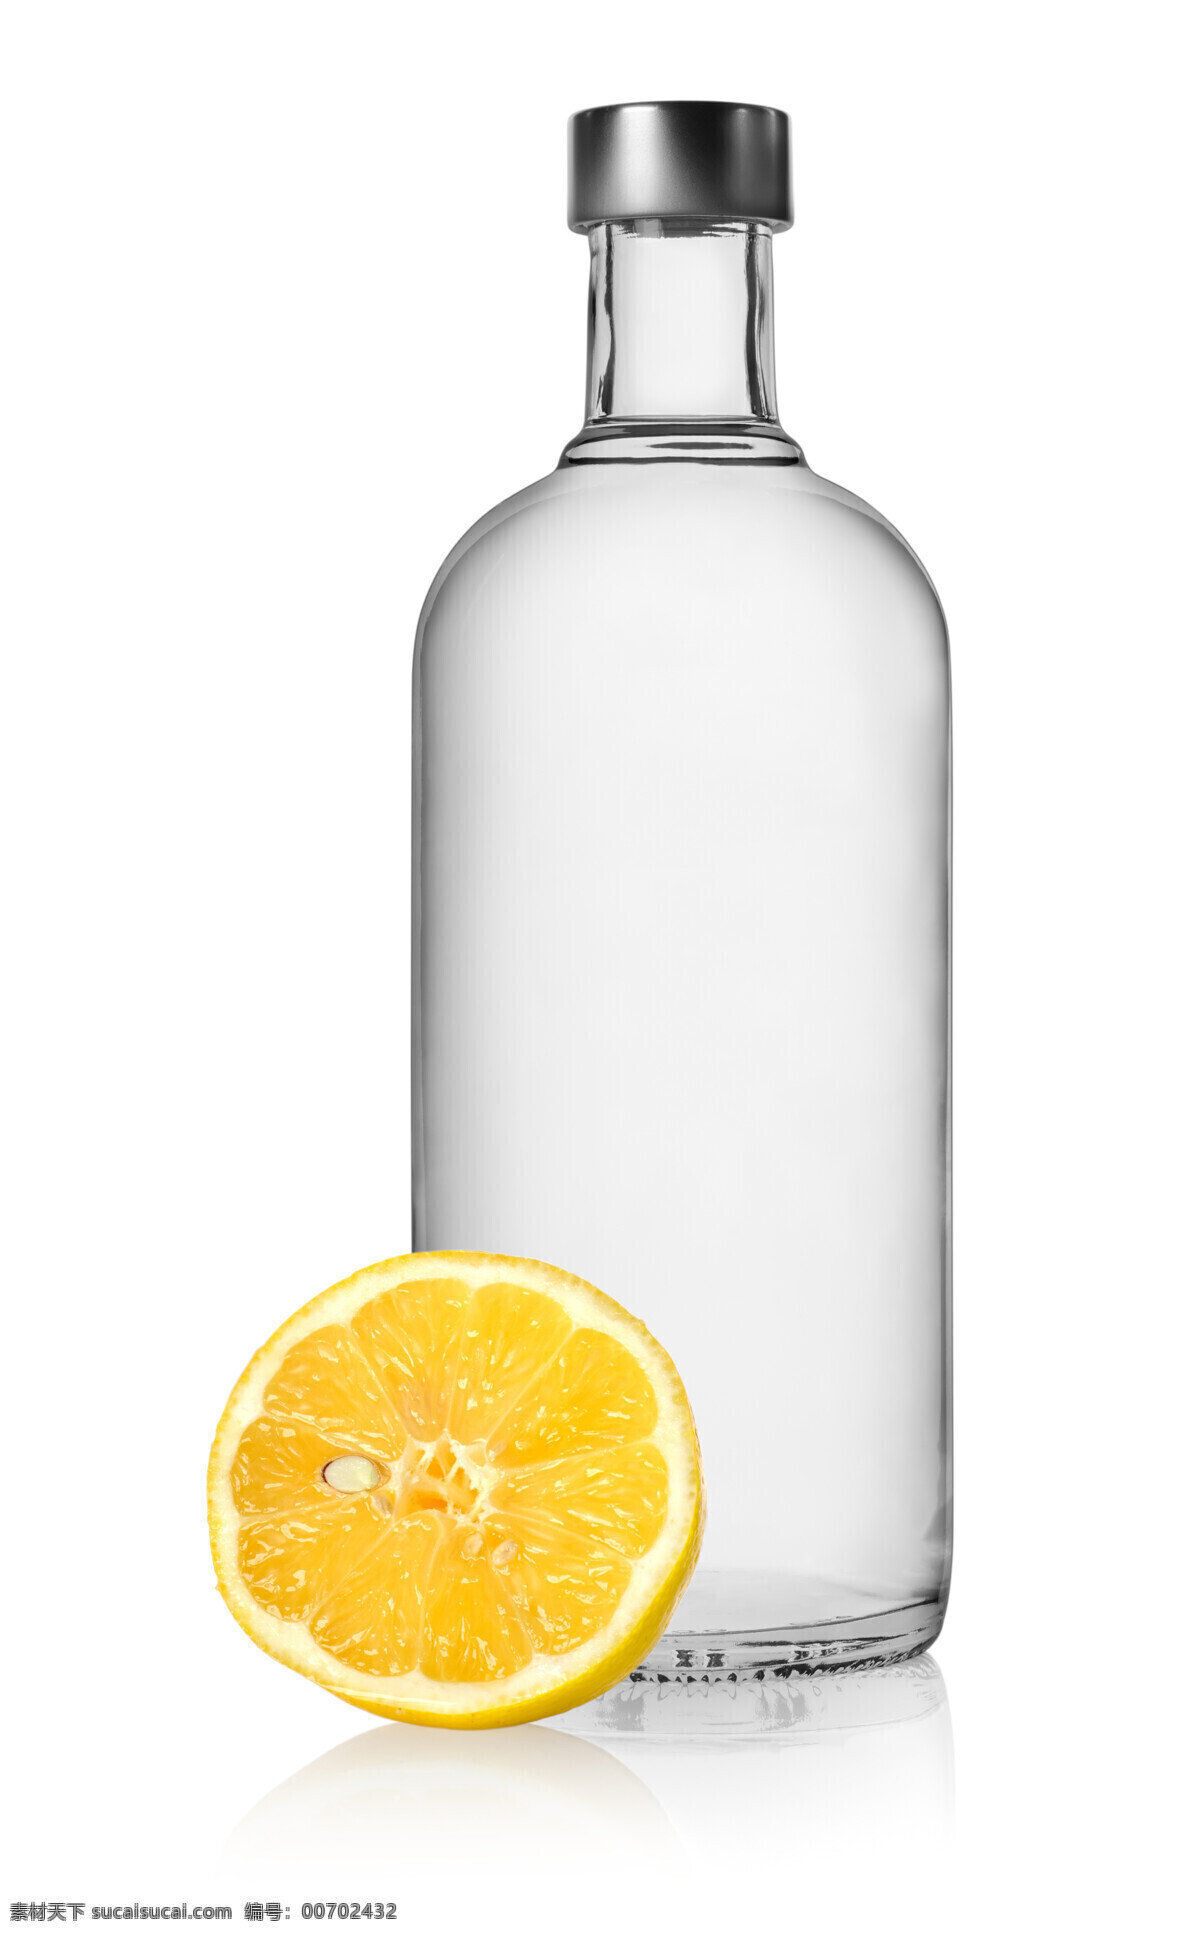 玻璃 瓶子 玻璃瓶 酒瓶 饮料 生活用品 酒水饮料 橙子 生活百科